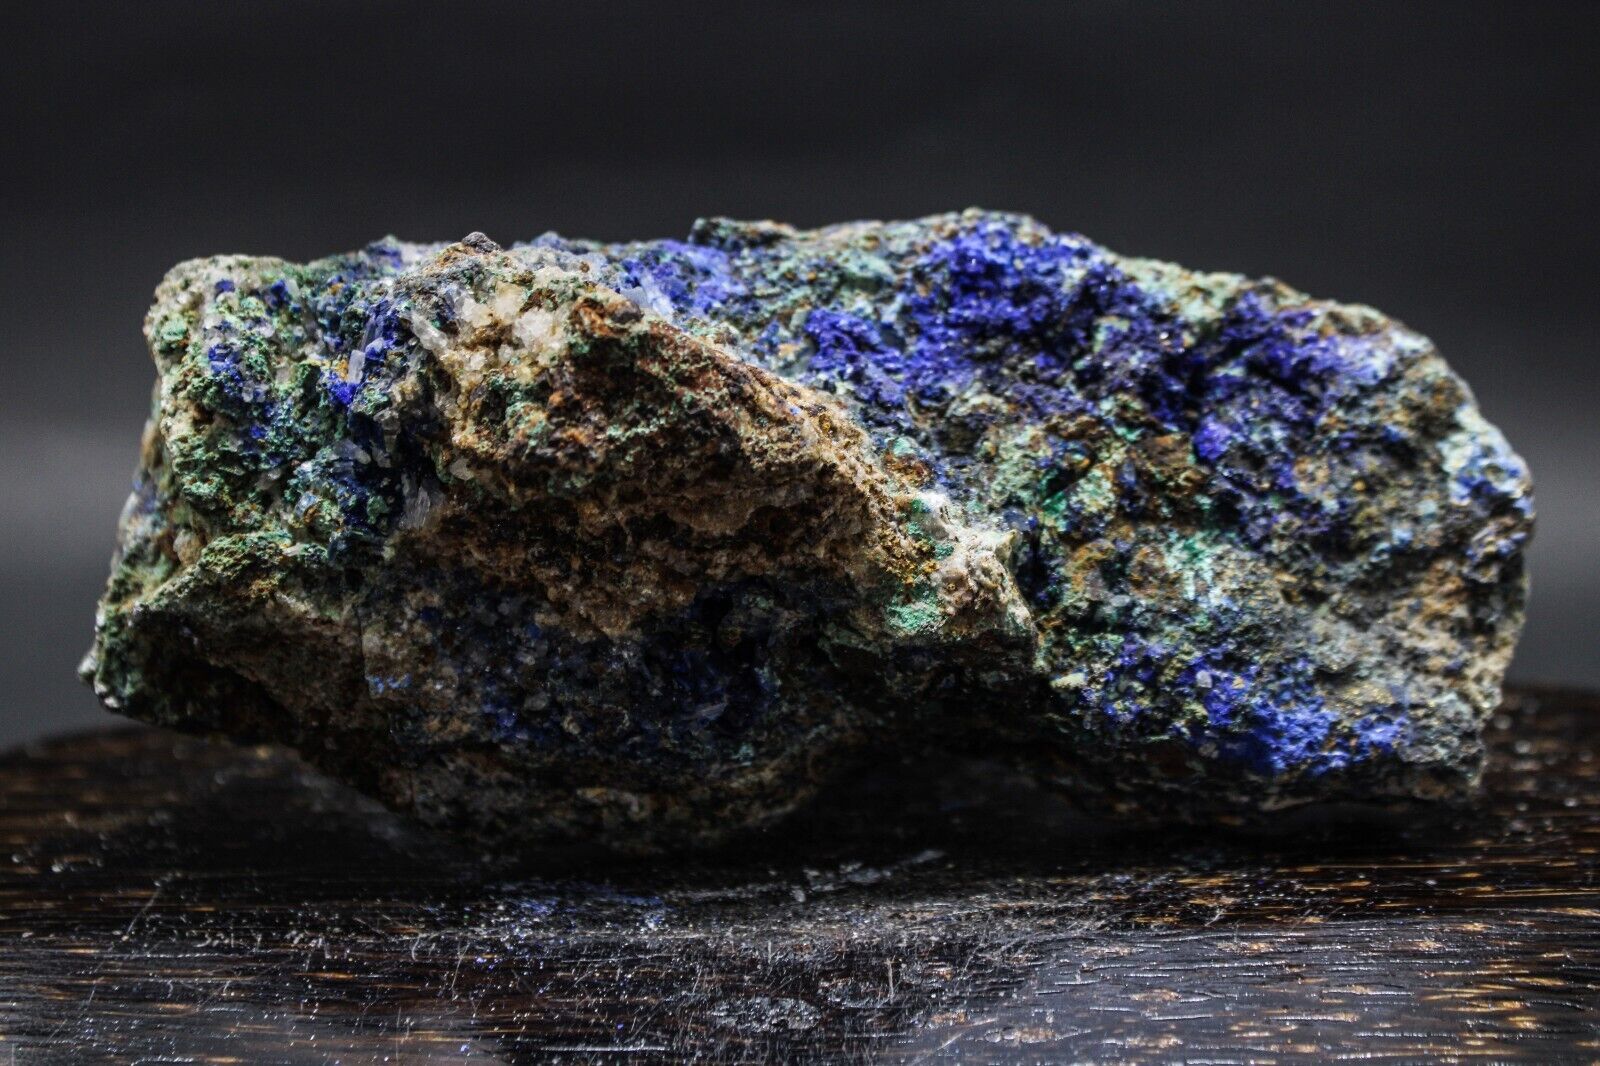 566GR BEST NATURAL Azurite/Malachite Crystaln Minerals Specimens